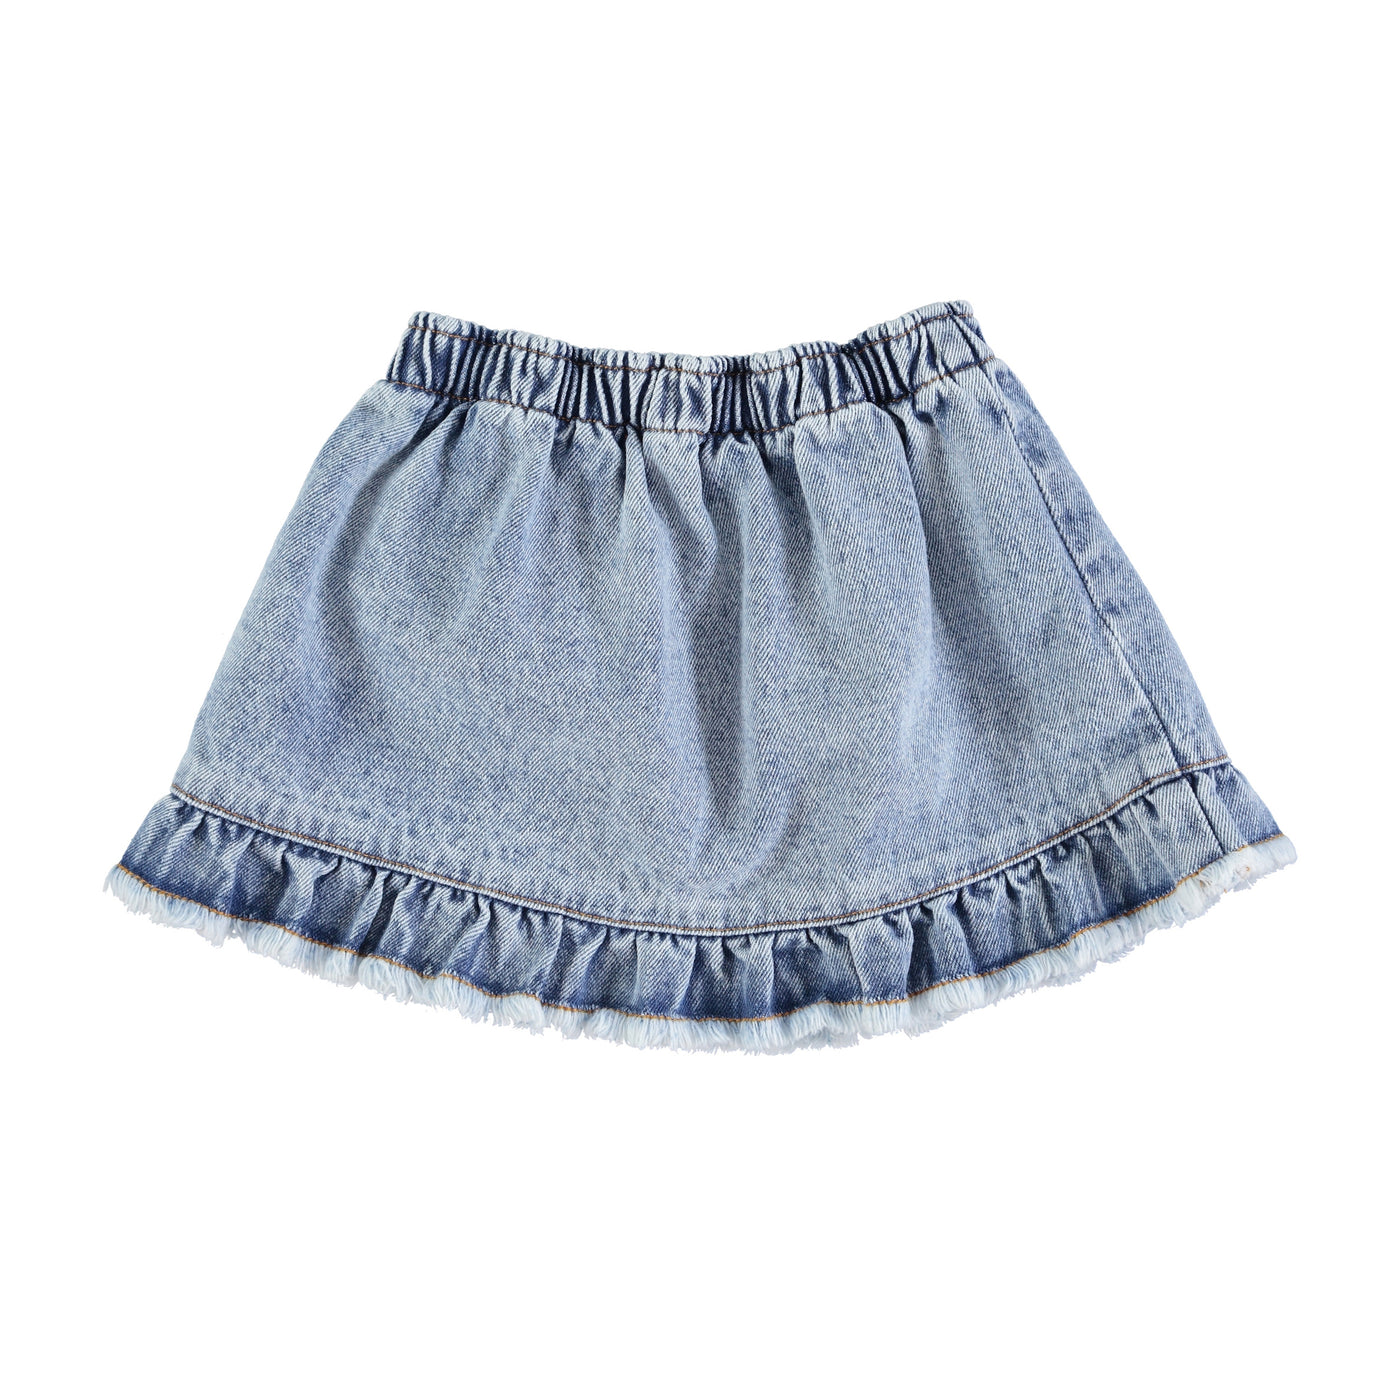 Piupiuchick falda corta con volantes | azul claro lavado